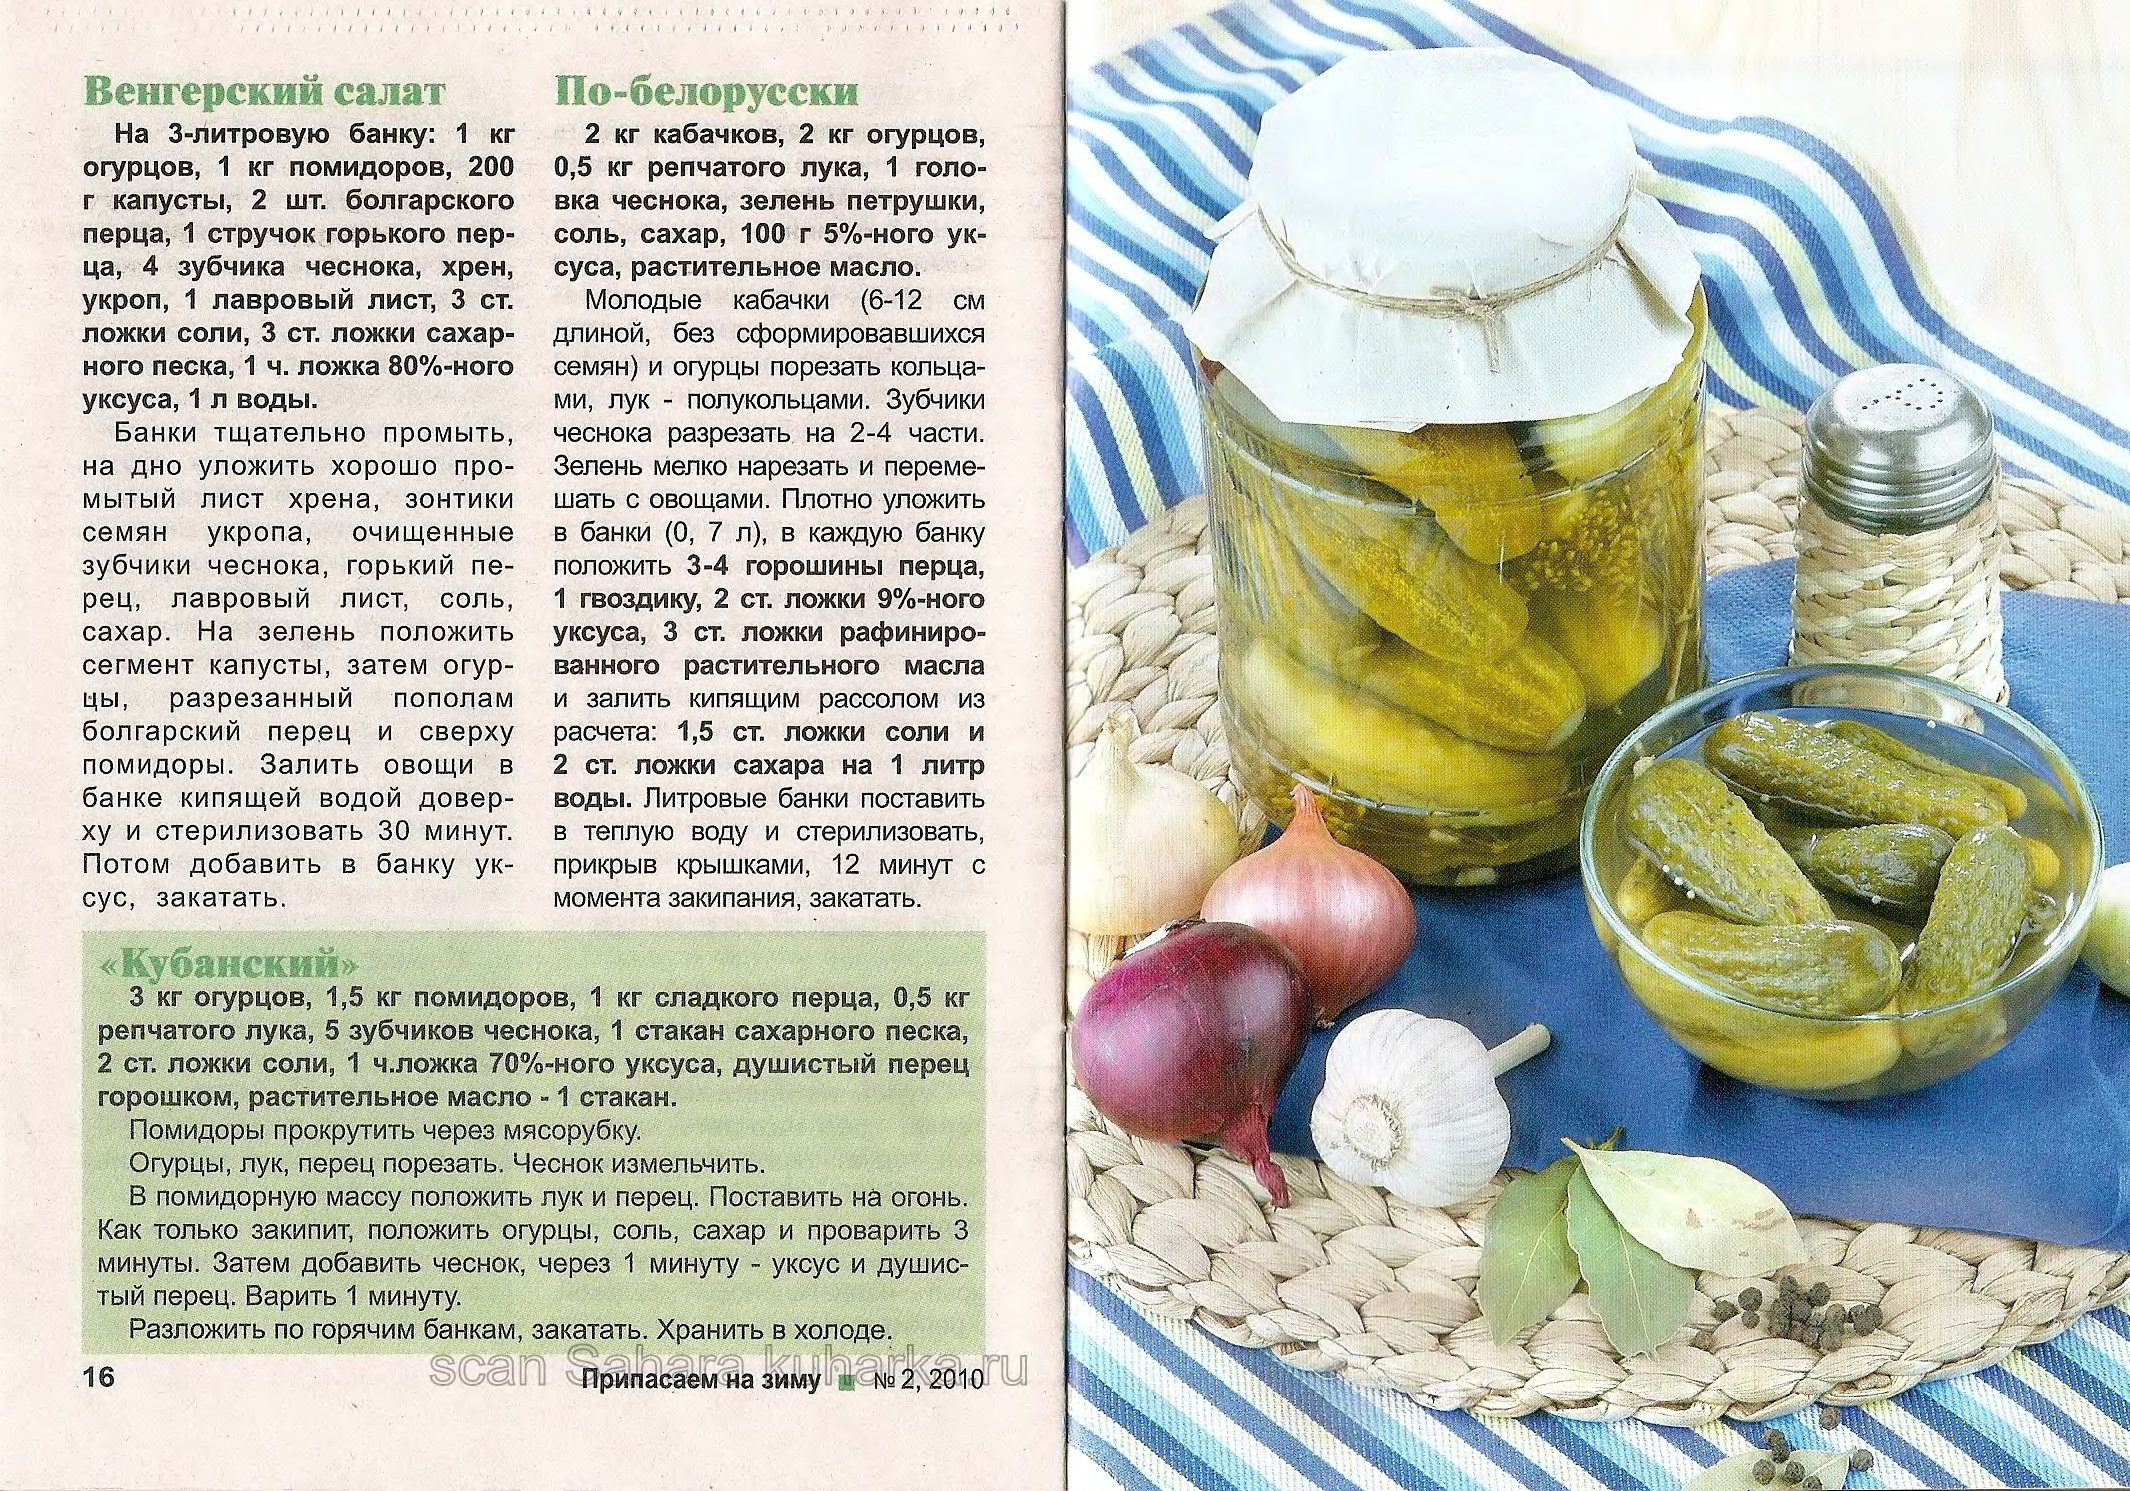 Засолка огурцов в ведре на зиму холодным способом: лучшие рецепты соленых огурчиков, рекомендации по хранению закусок холодного посола